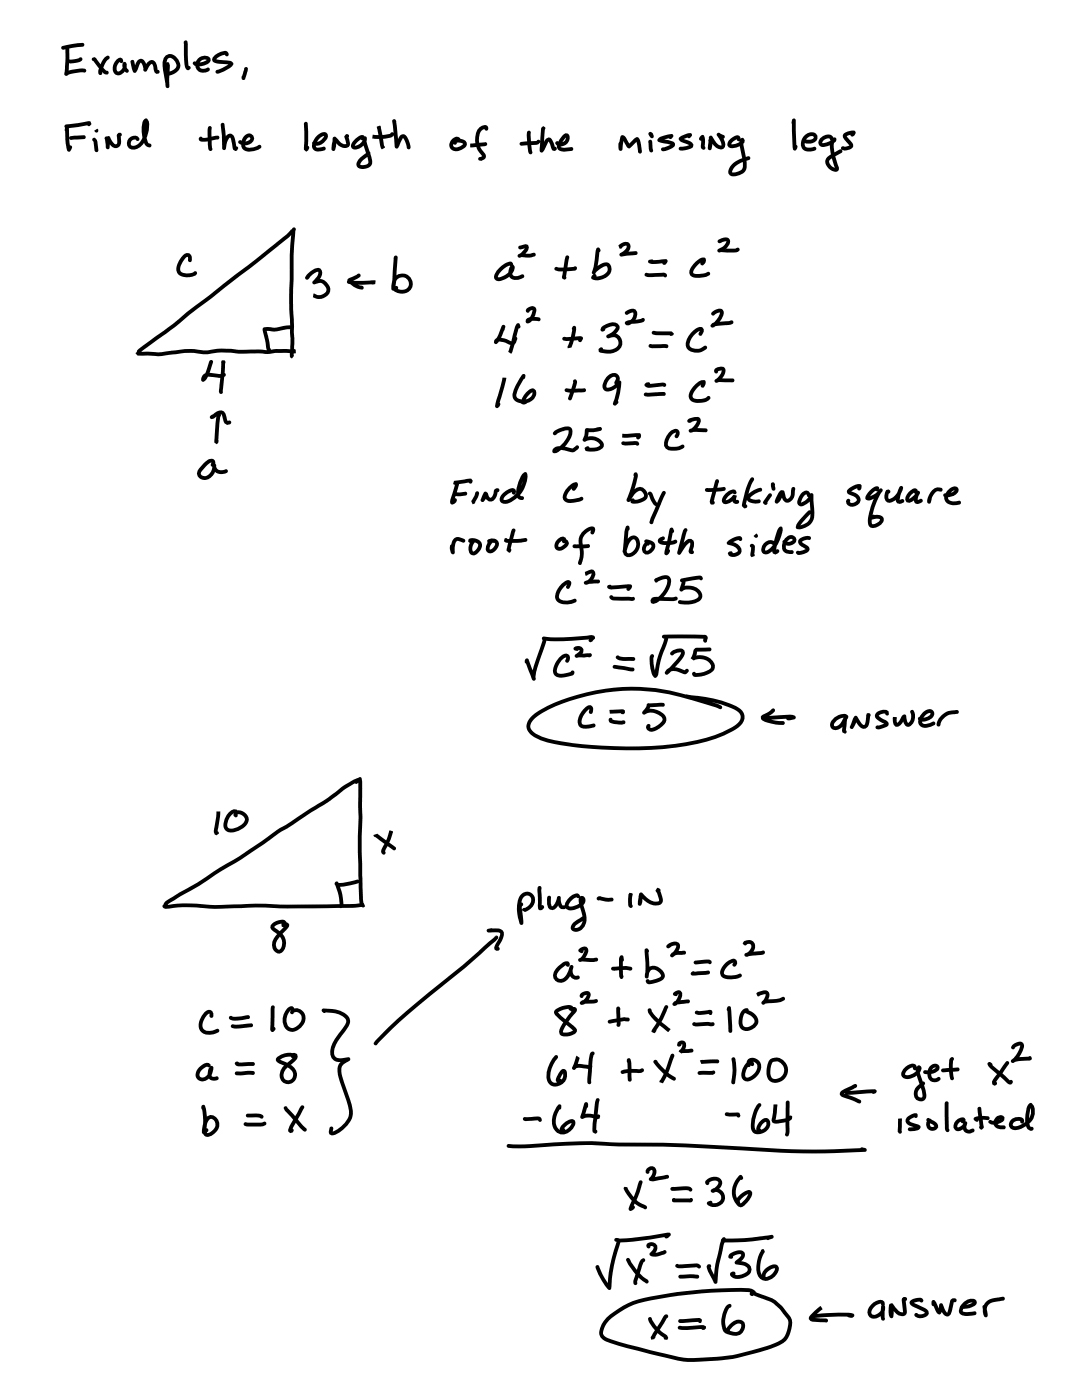 pythagoras-sats-jb-ma-1b-ma-5000